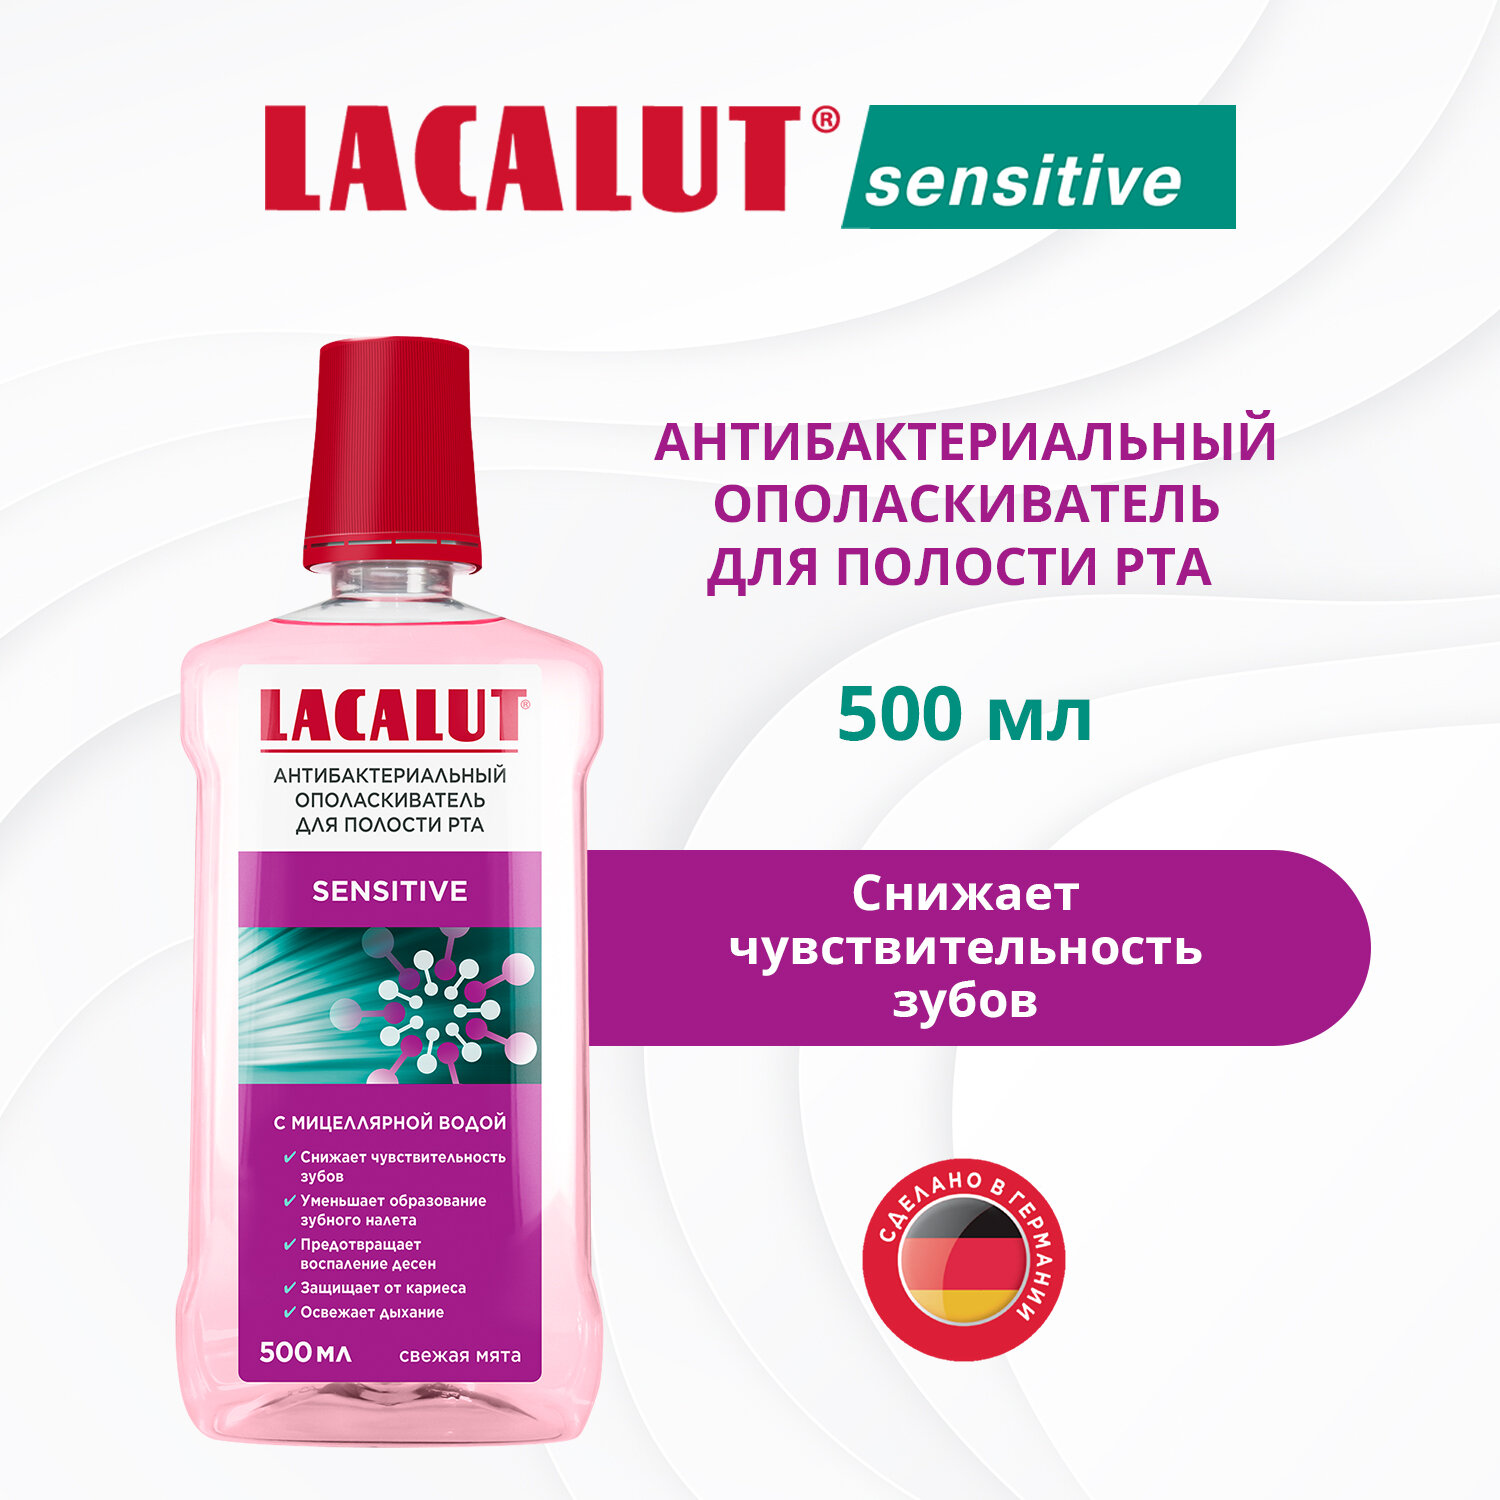 LACALUT® sensitive антибактериальный ополаскиватель для полости рта, 500 мл